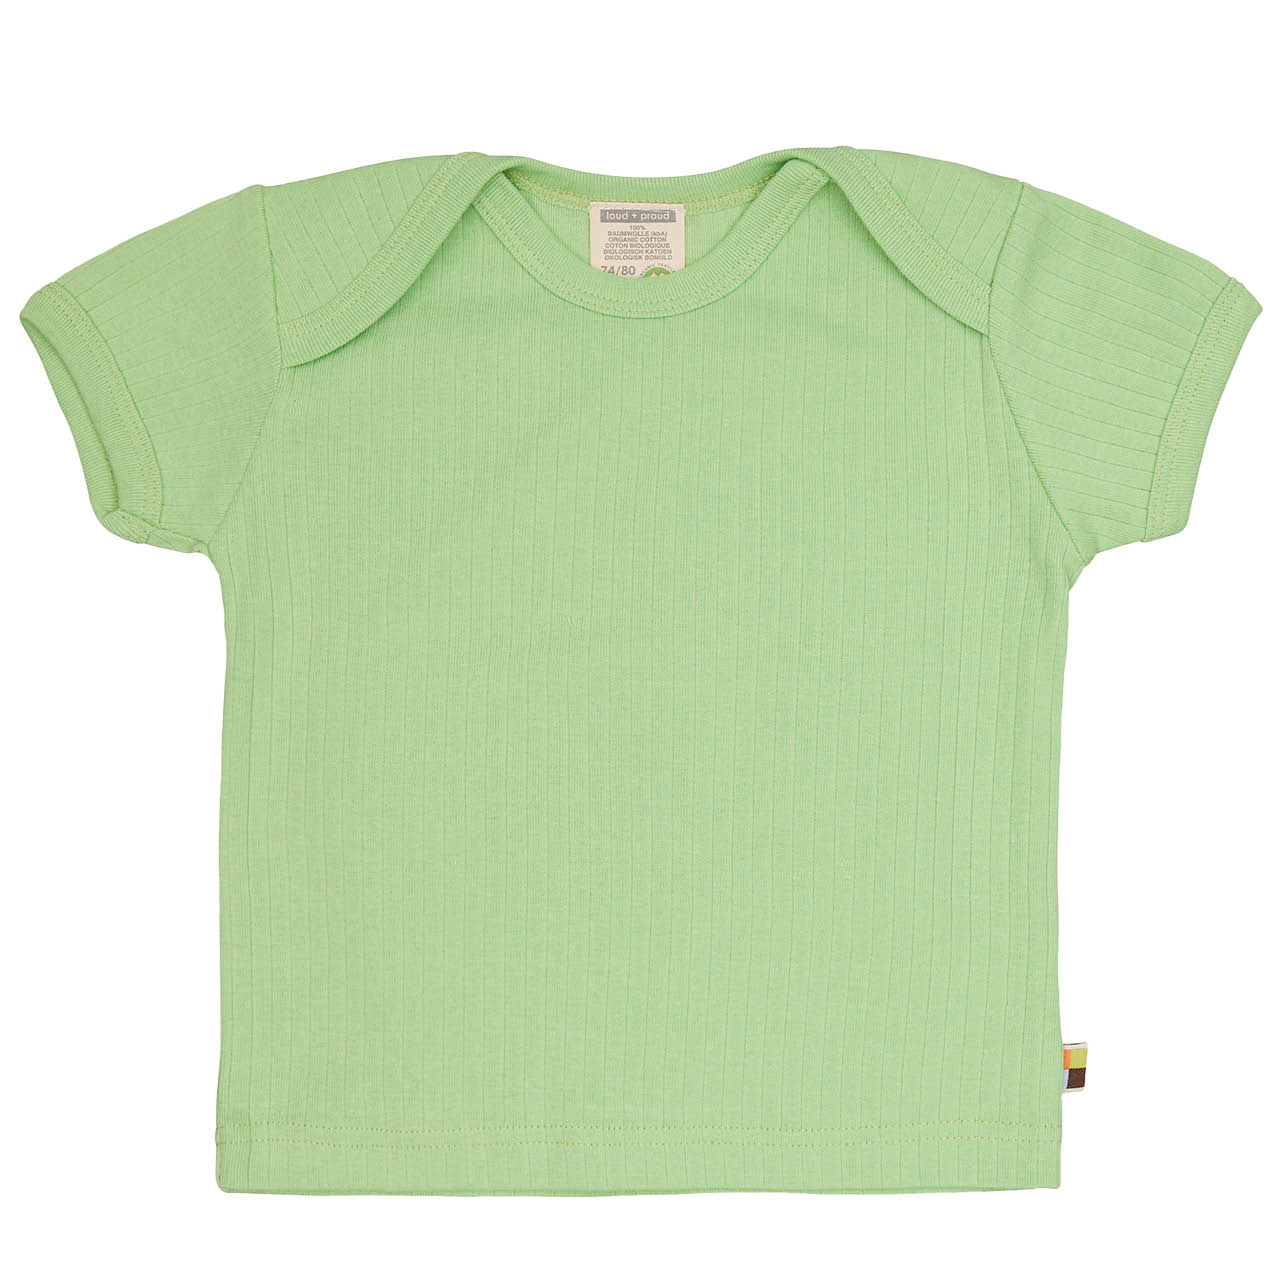 Weiches T-Shirt Rippe hellgrün